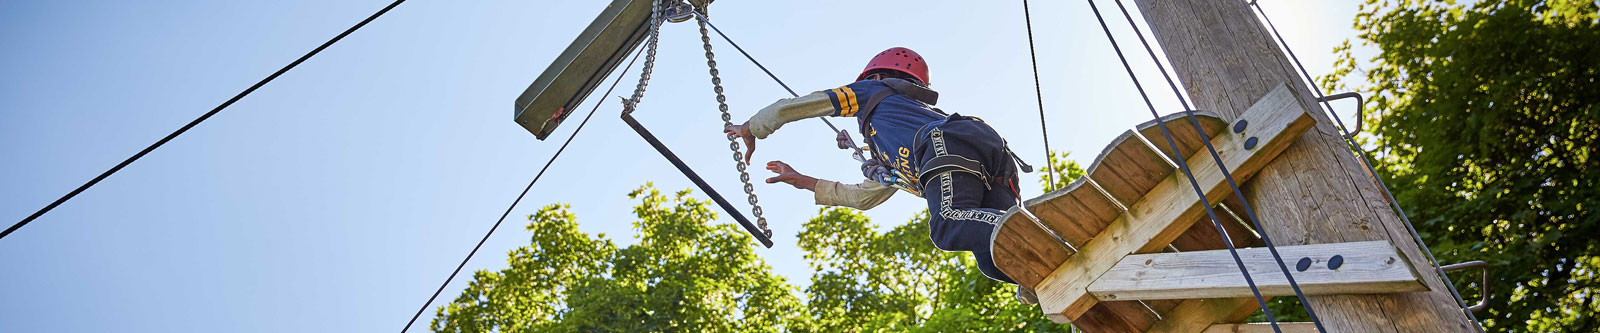 A young boy jumping off a high wooden platform to reach a trapeze bar